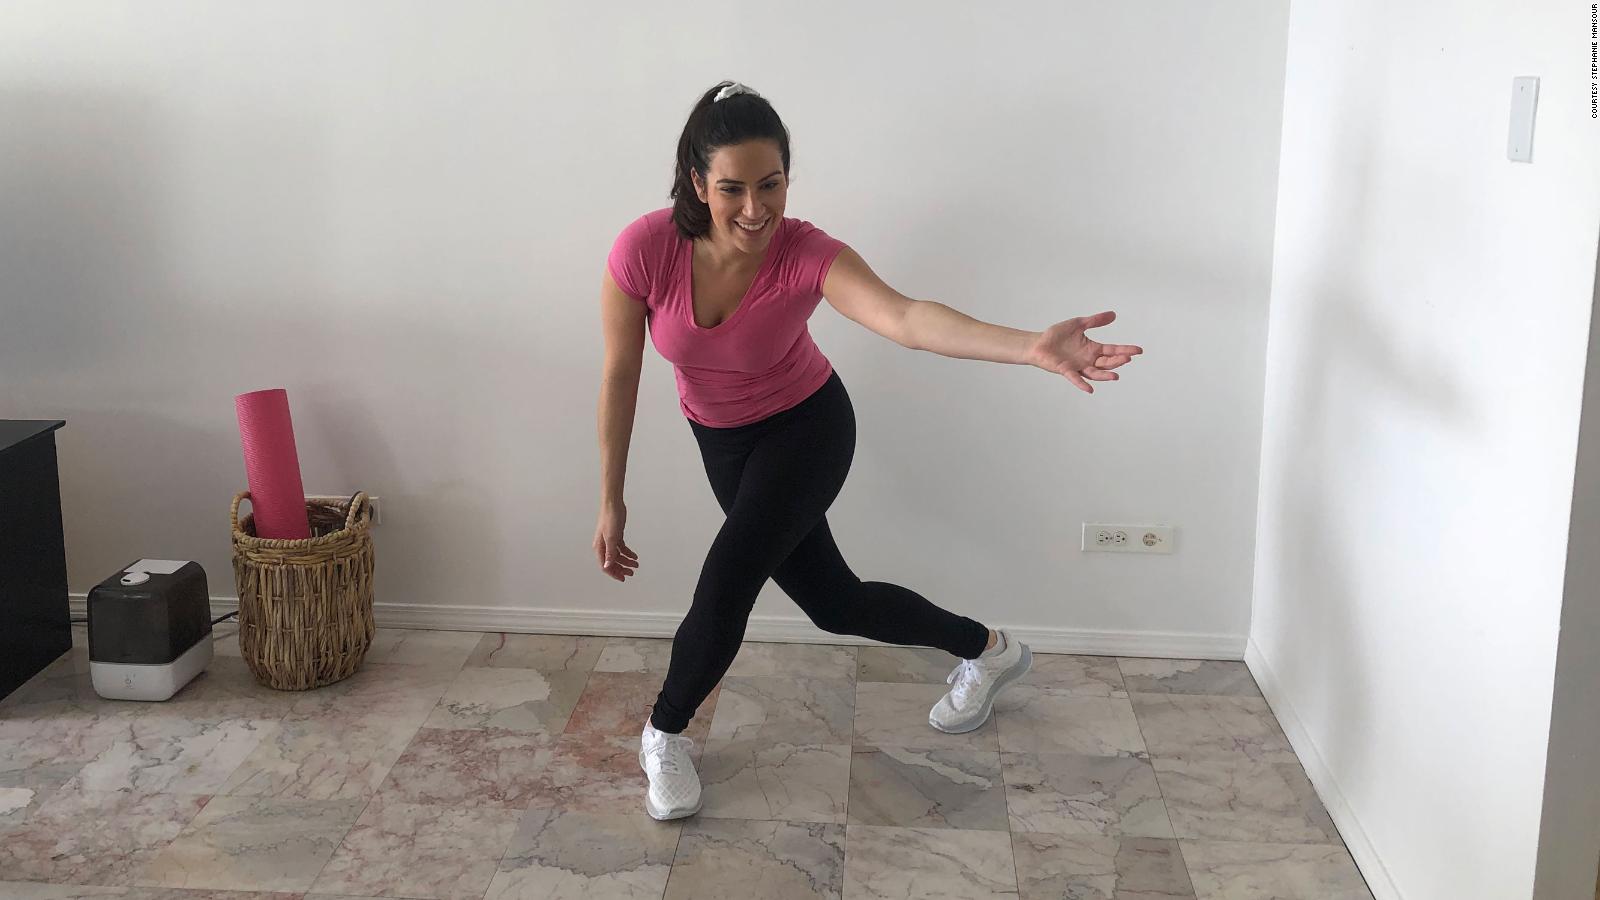 Cómo cambiar tu entrenamiento con sencillos movimientos cardiovasculares de baile